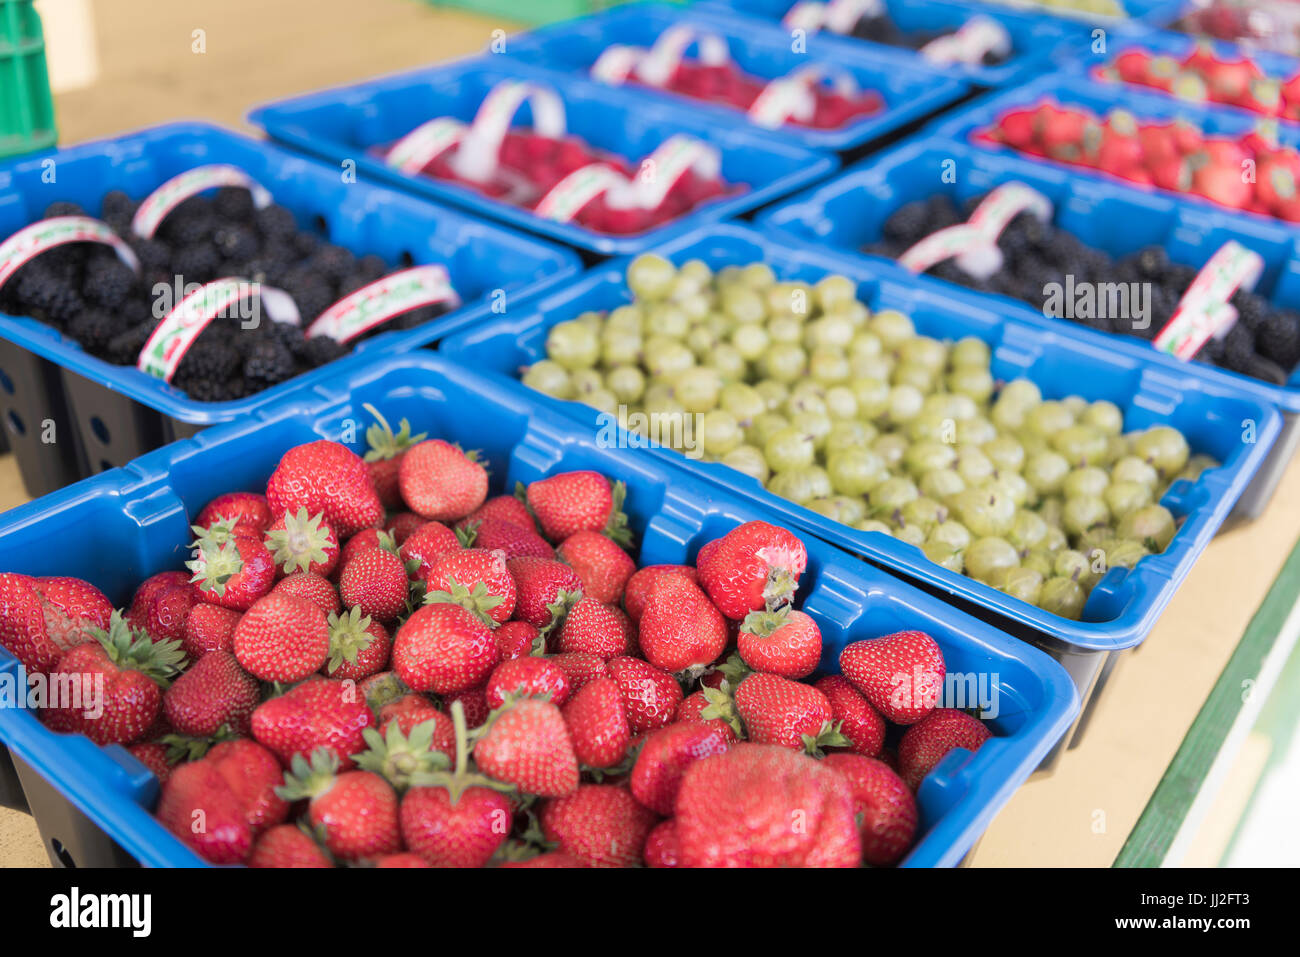 De barquettes, fraîchement cueillies et cultivées sur place durant la saison de fraises, mûres, framboises et groseilles à Wexford, Irlande. Banque D'Images